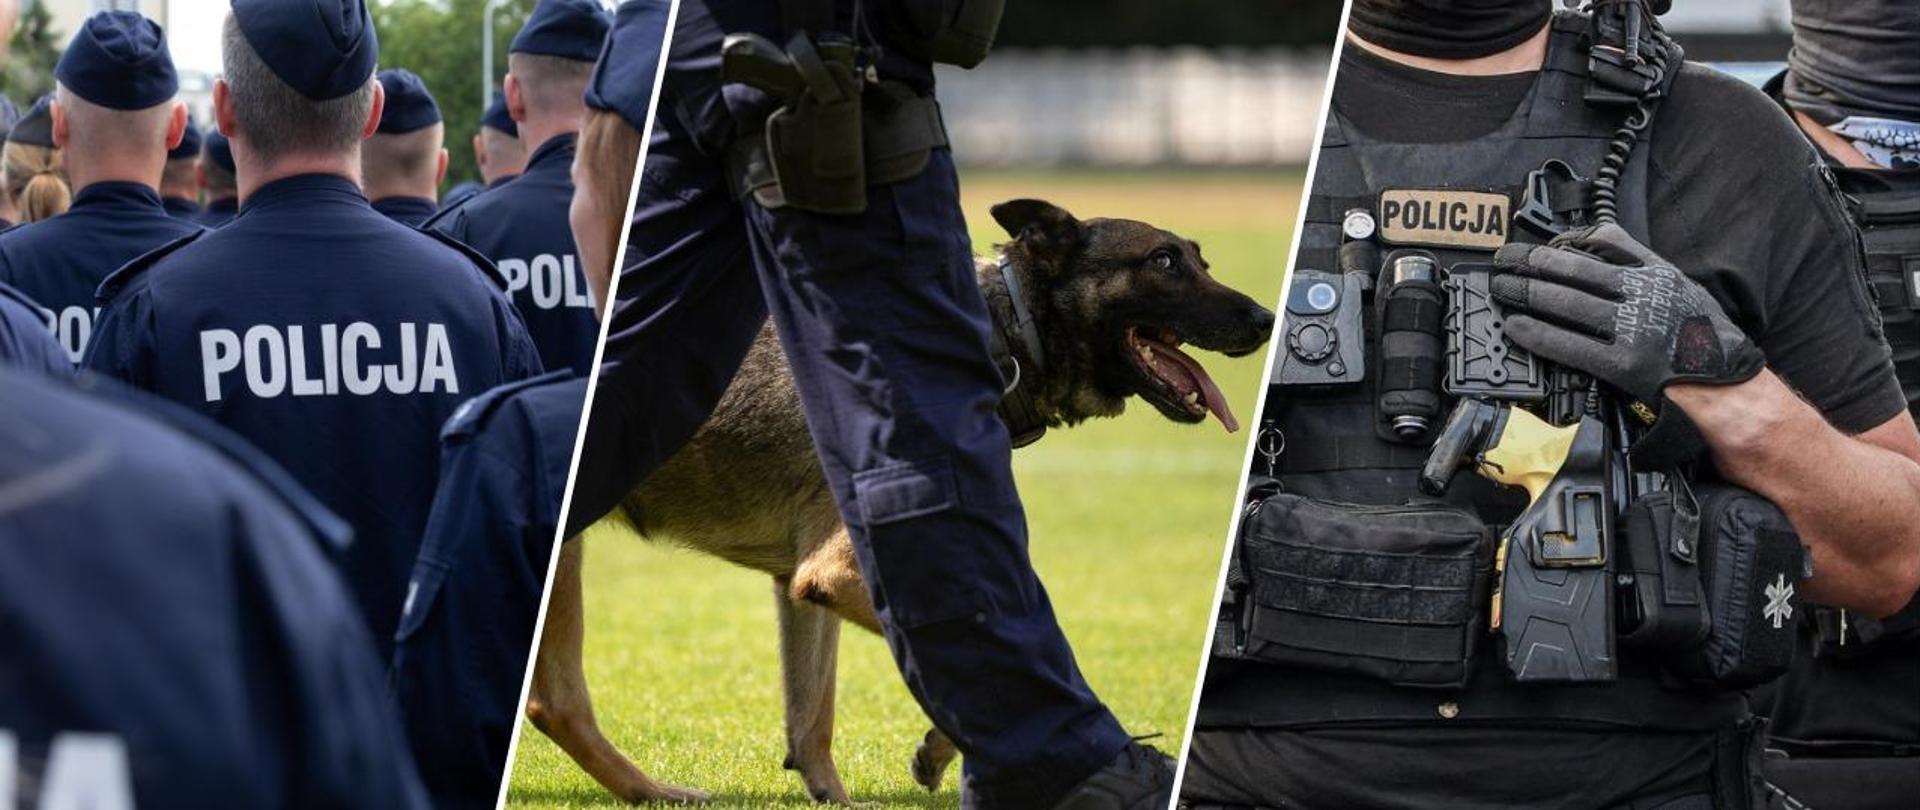 Kolaż trzech zdjęć. Pierwsze przedstawia grupę policjantów stojących tyłem w mundurach z napisem Policja, druga fotografia przedstawia maszerującego policjanta z psem. Trzecie to zbliżenie na uzbrojenie taktyczne na piersi policjanta.